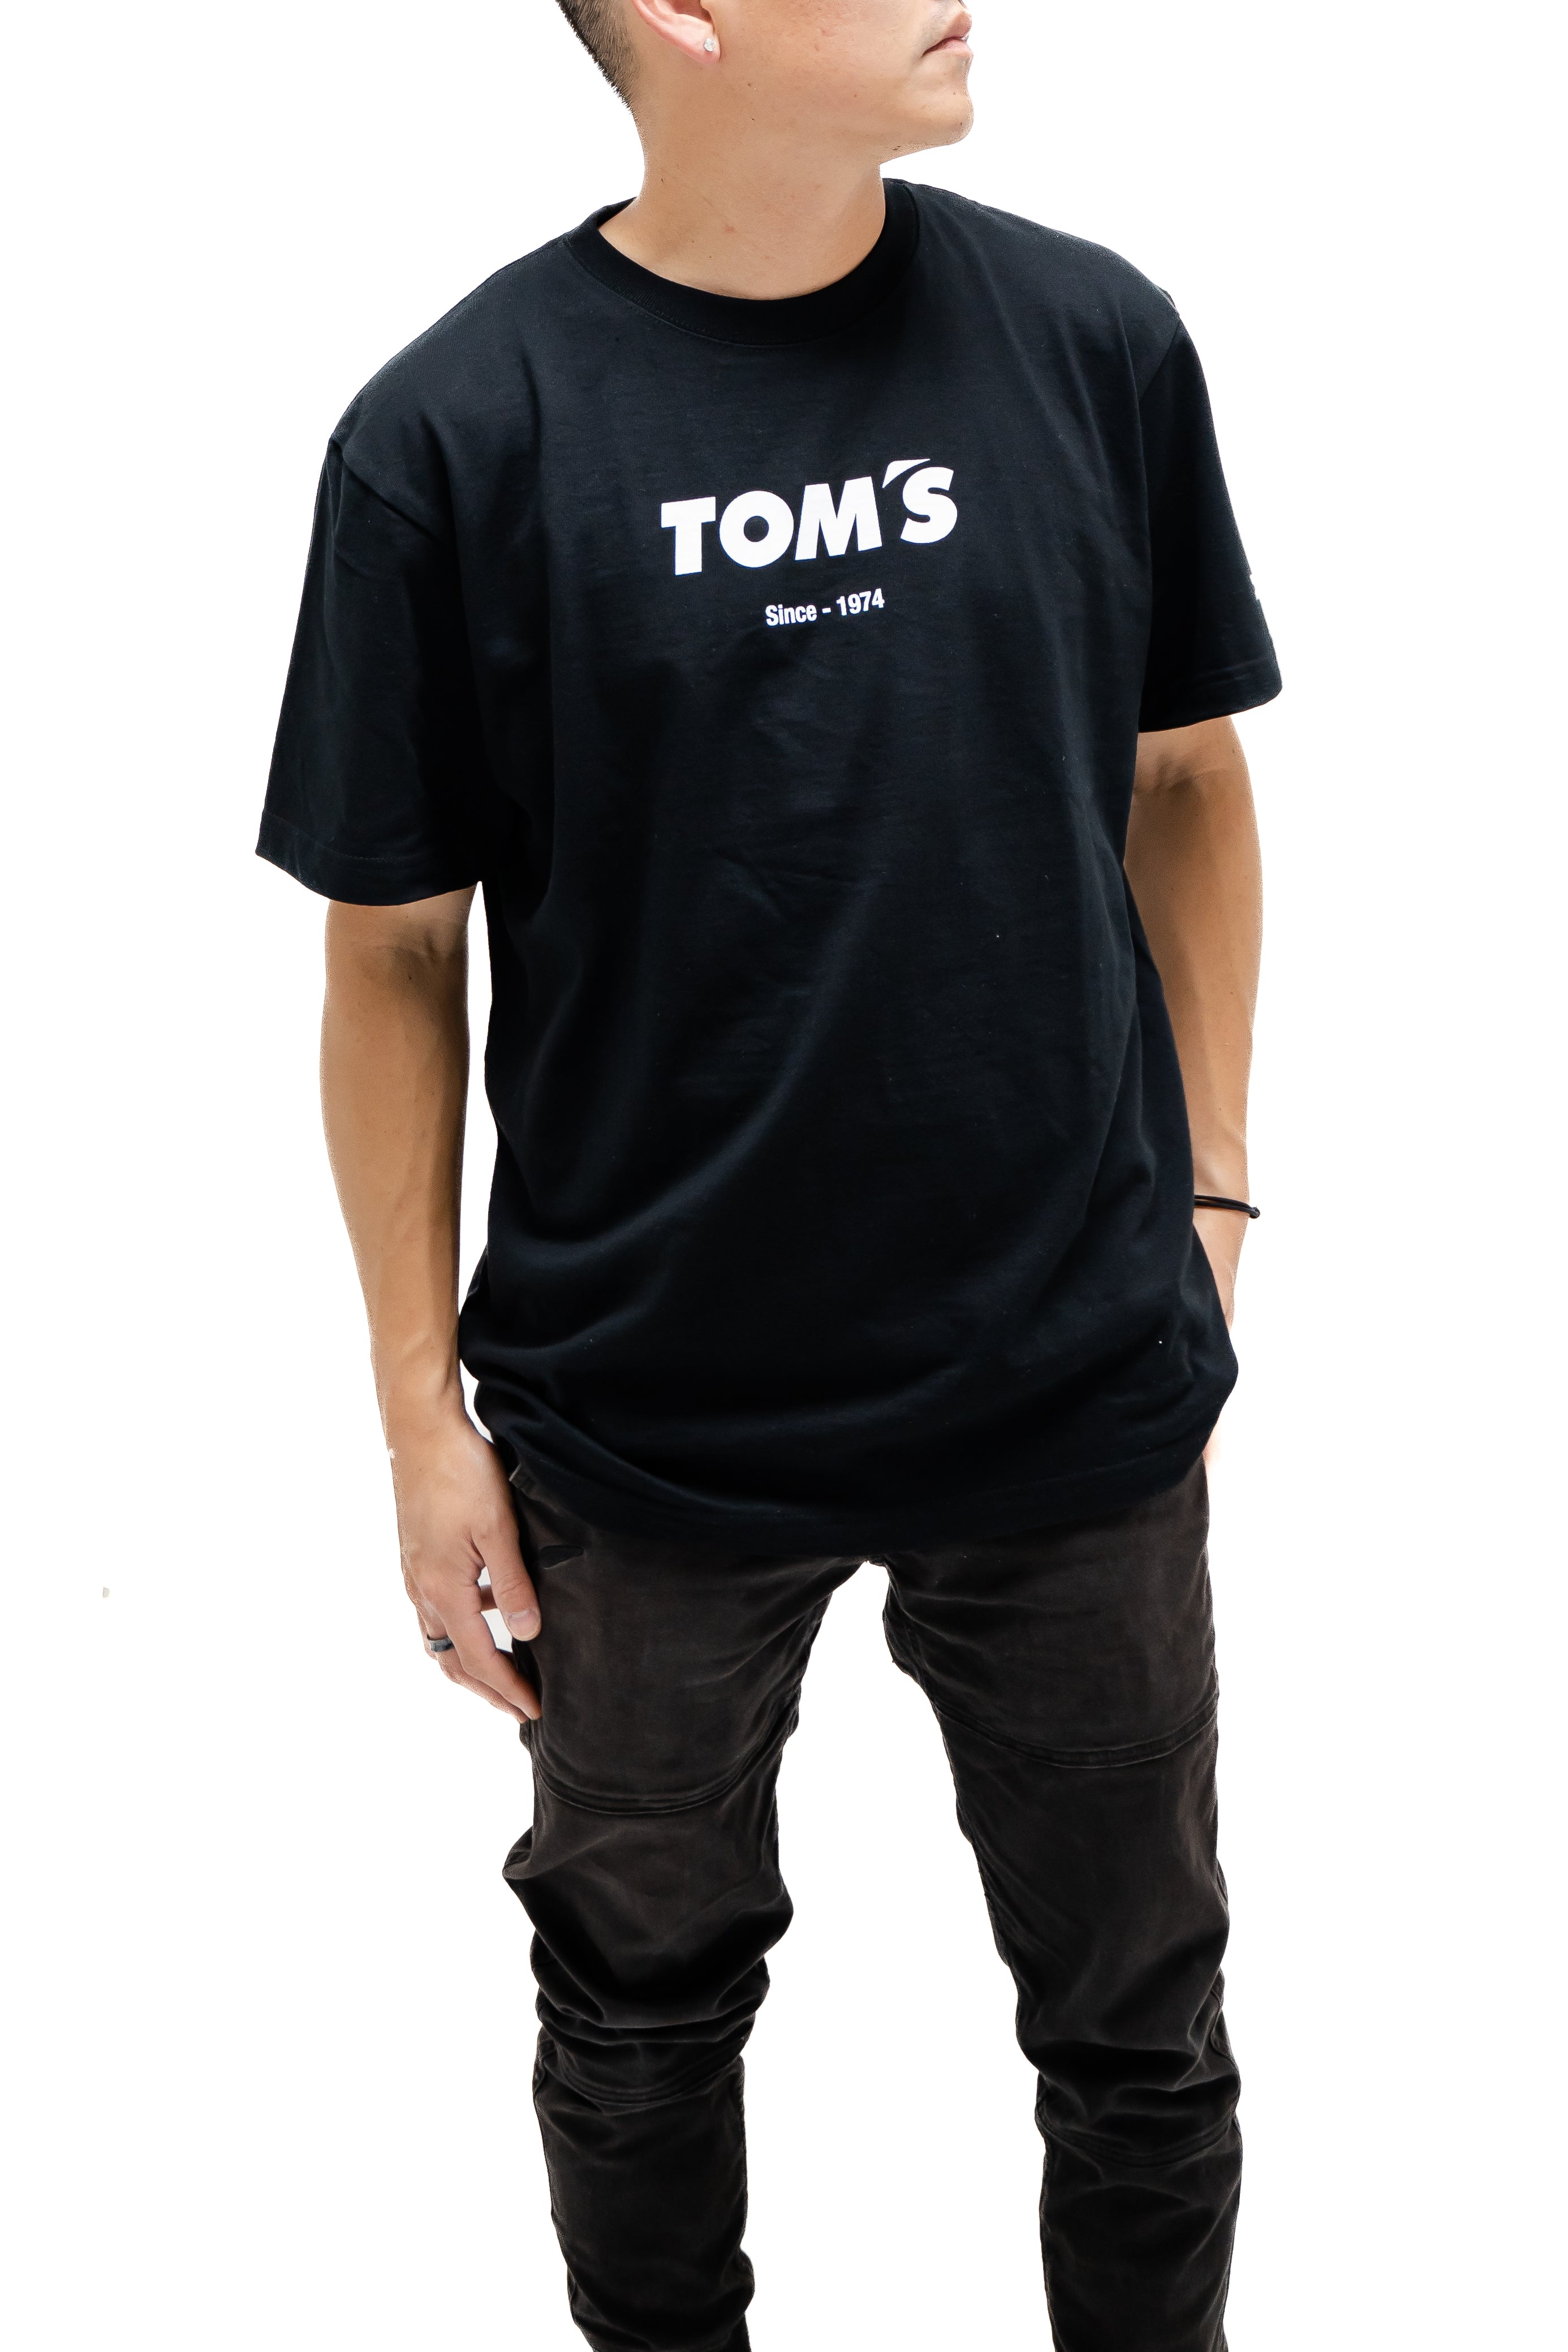 TOM'S Racing - Heritage (Katakana) Premium T-Shirt